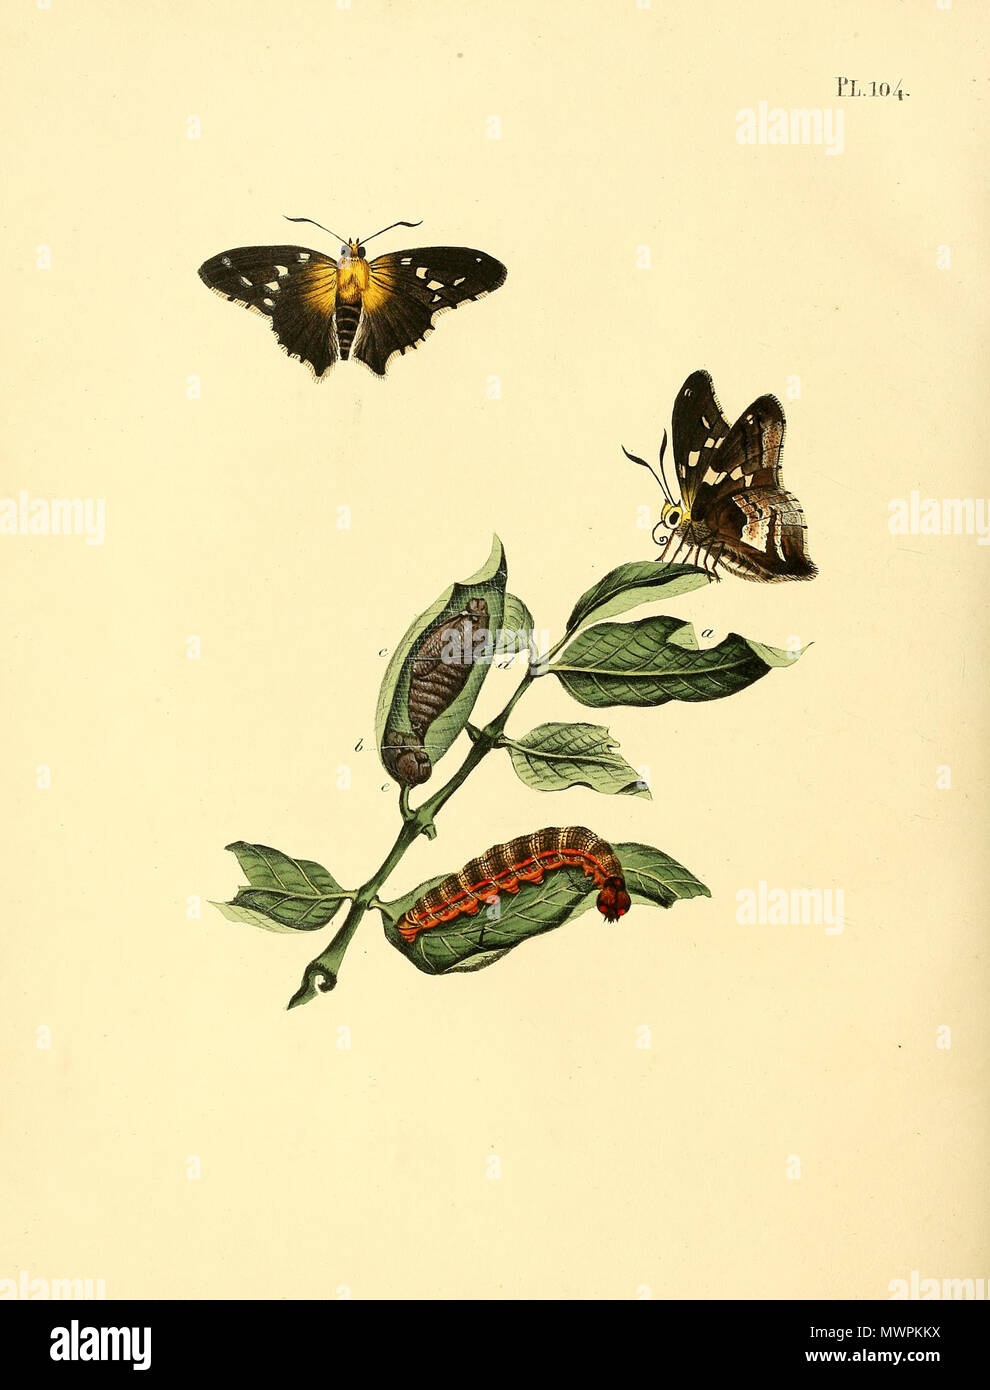 . Illustrazione di: unidentified butterfly, descritto come Papilio idas (questo non è Plebejus idas, vedi illustrazione) . 1852. Jan Sepp (1778 - 1853) 552 Sepp-Surinaamsche vlinders - pl 104 piastra descr. Come Papilio idas Foto Stock